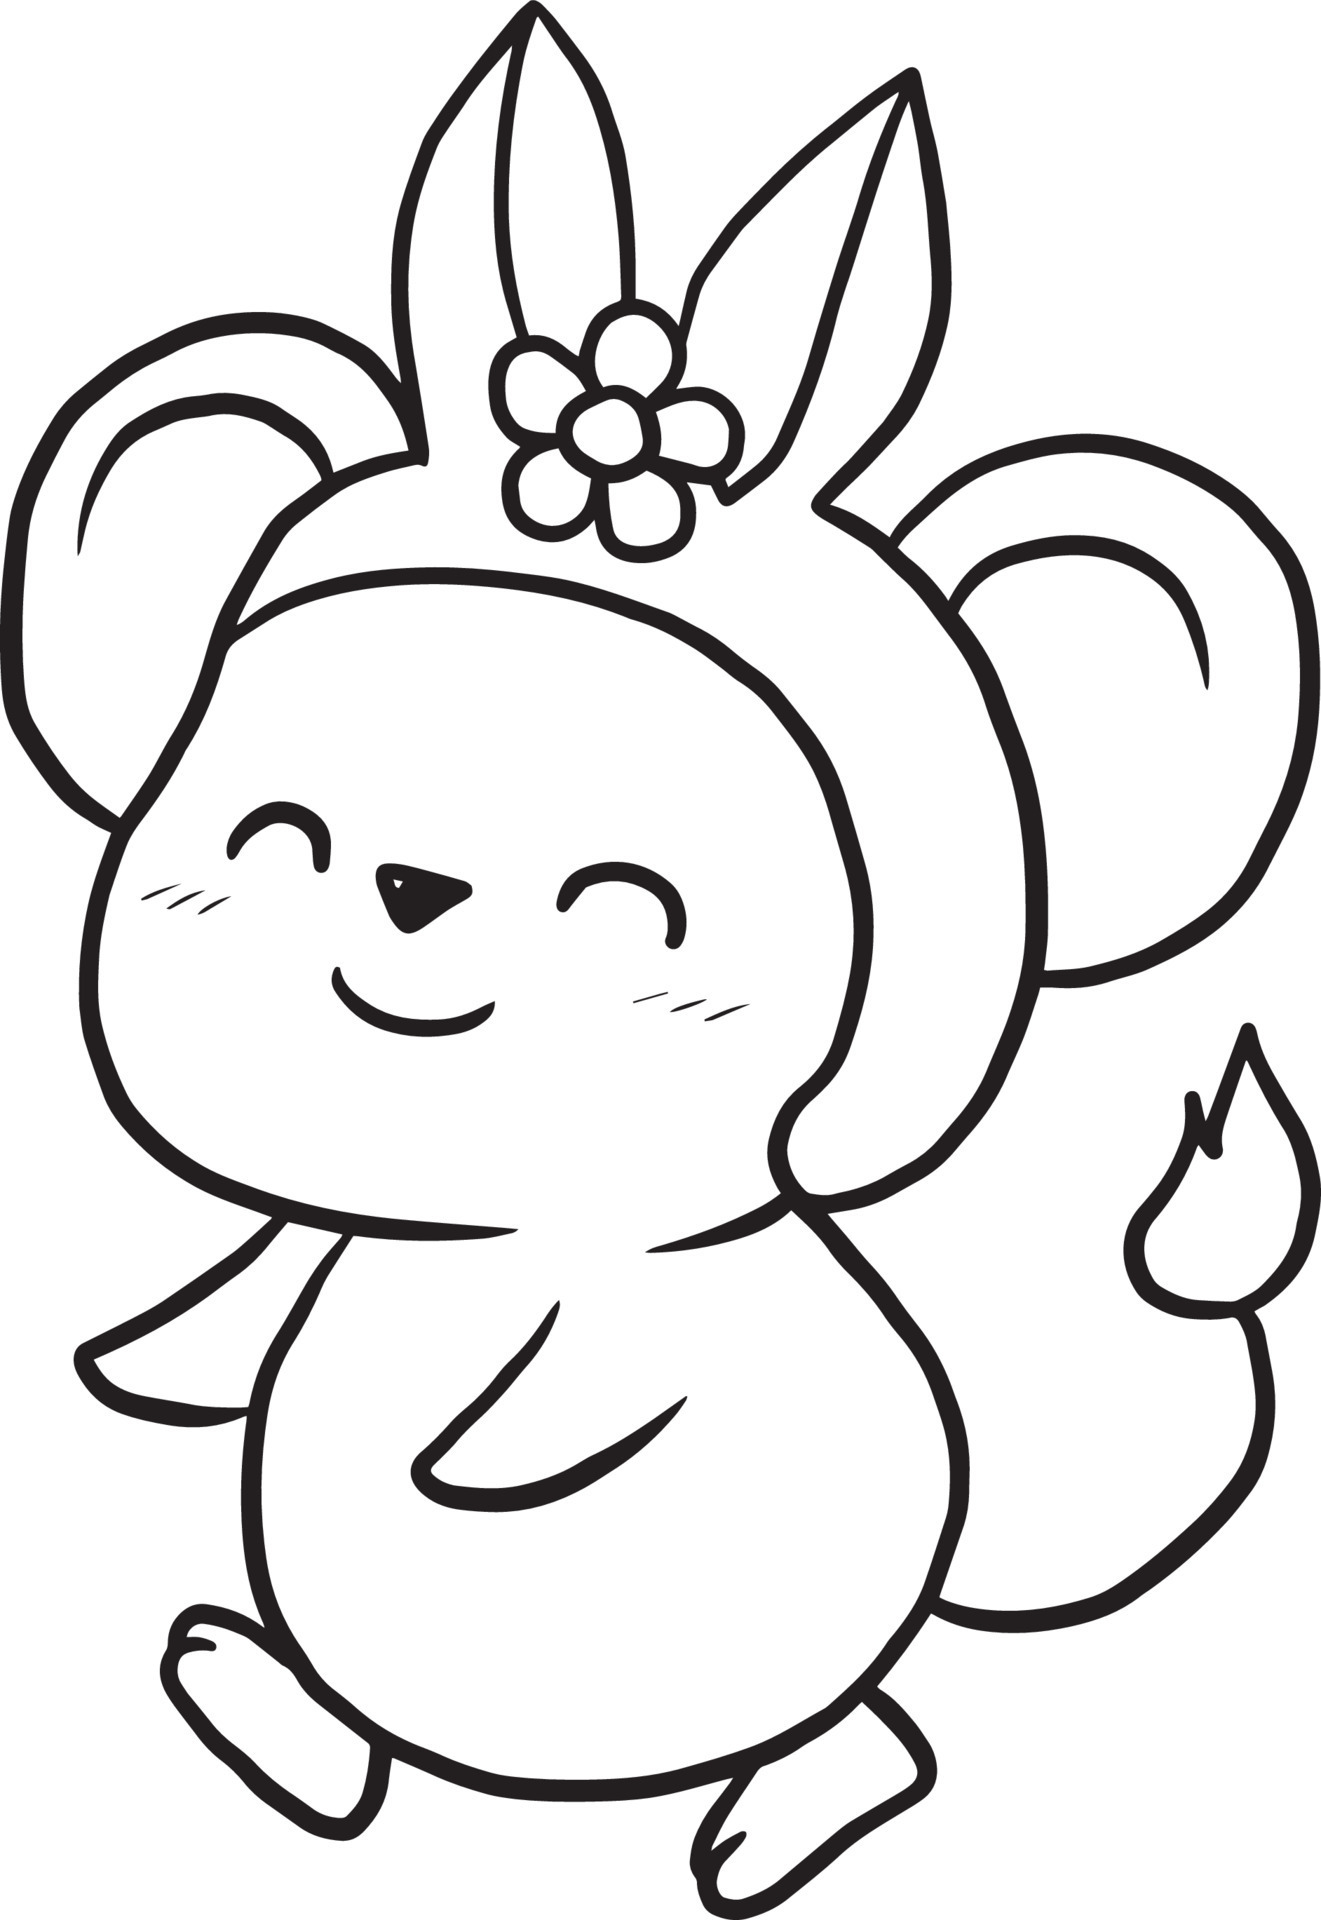 rat cartoon doodle kawaii anime cute coloring page 10504765 Vector ...